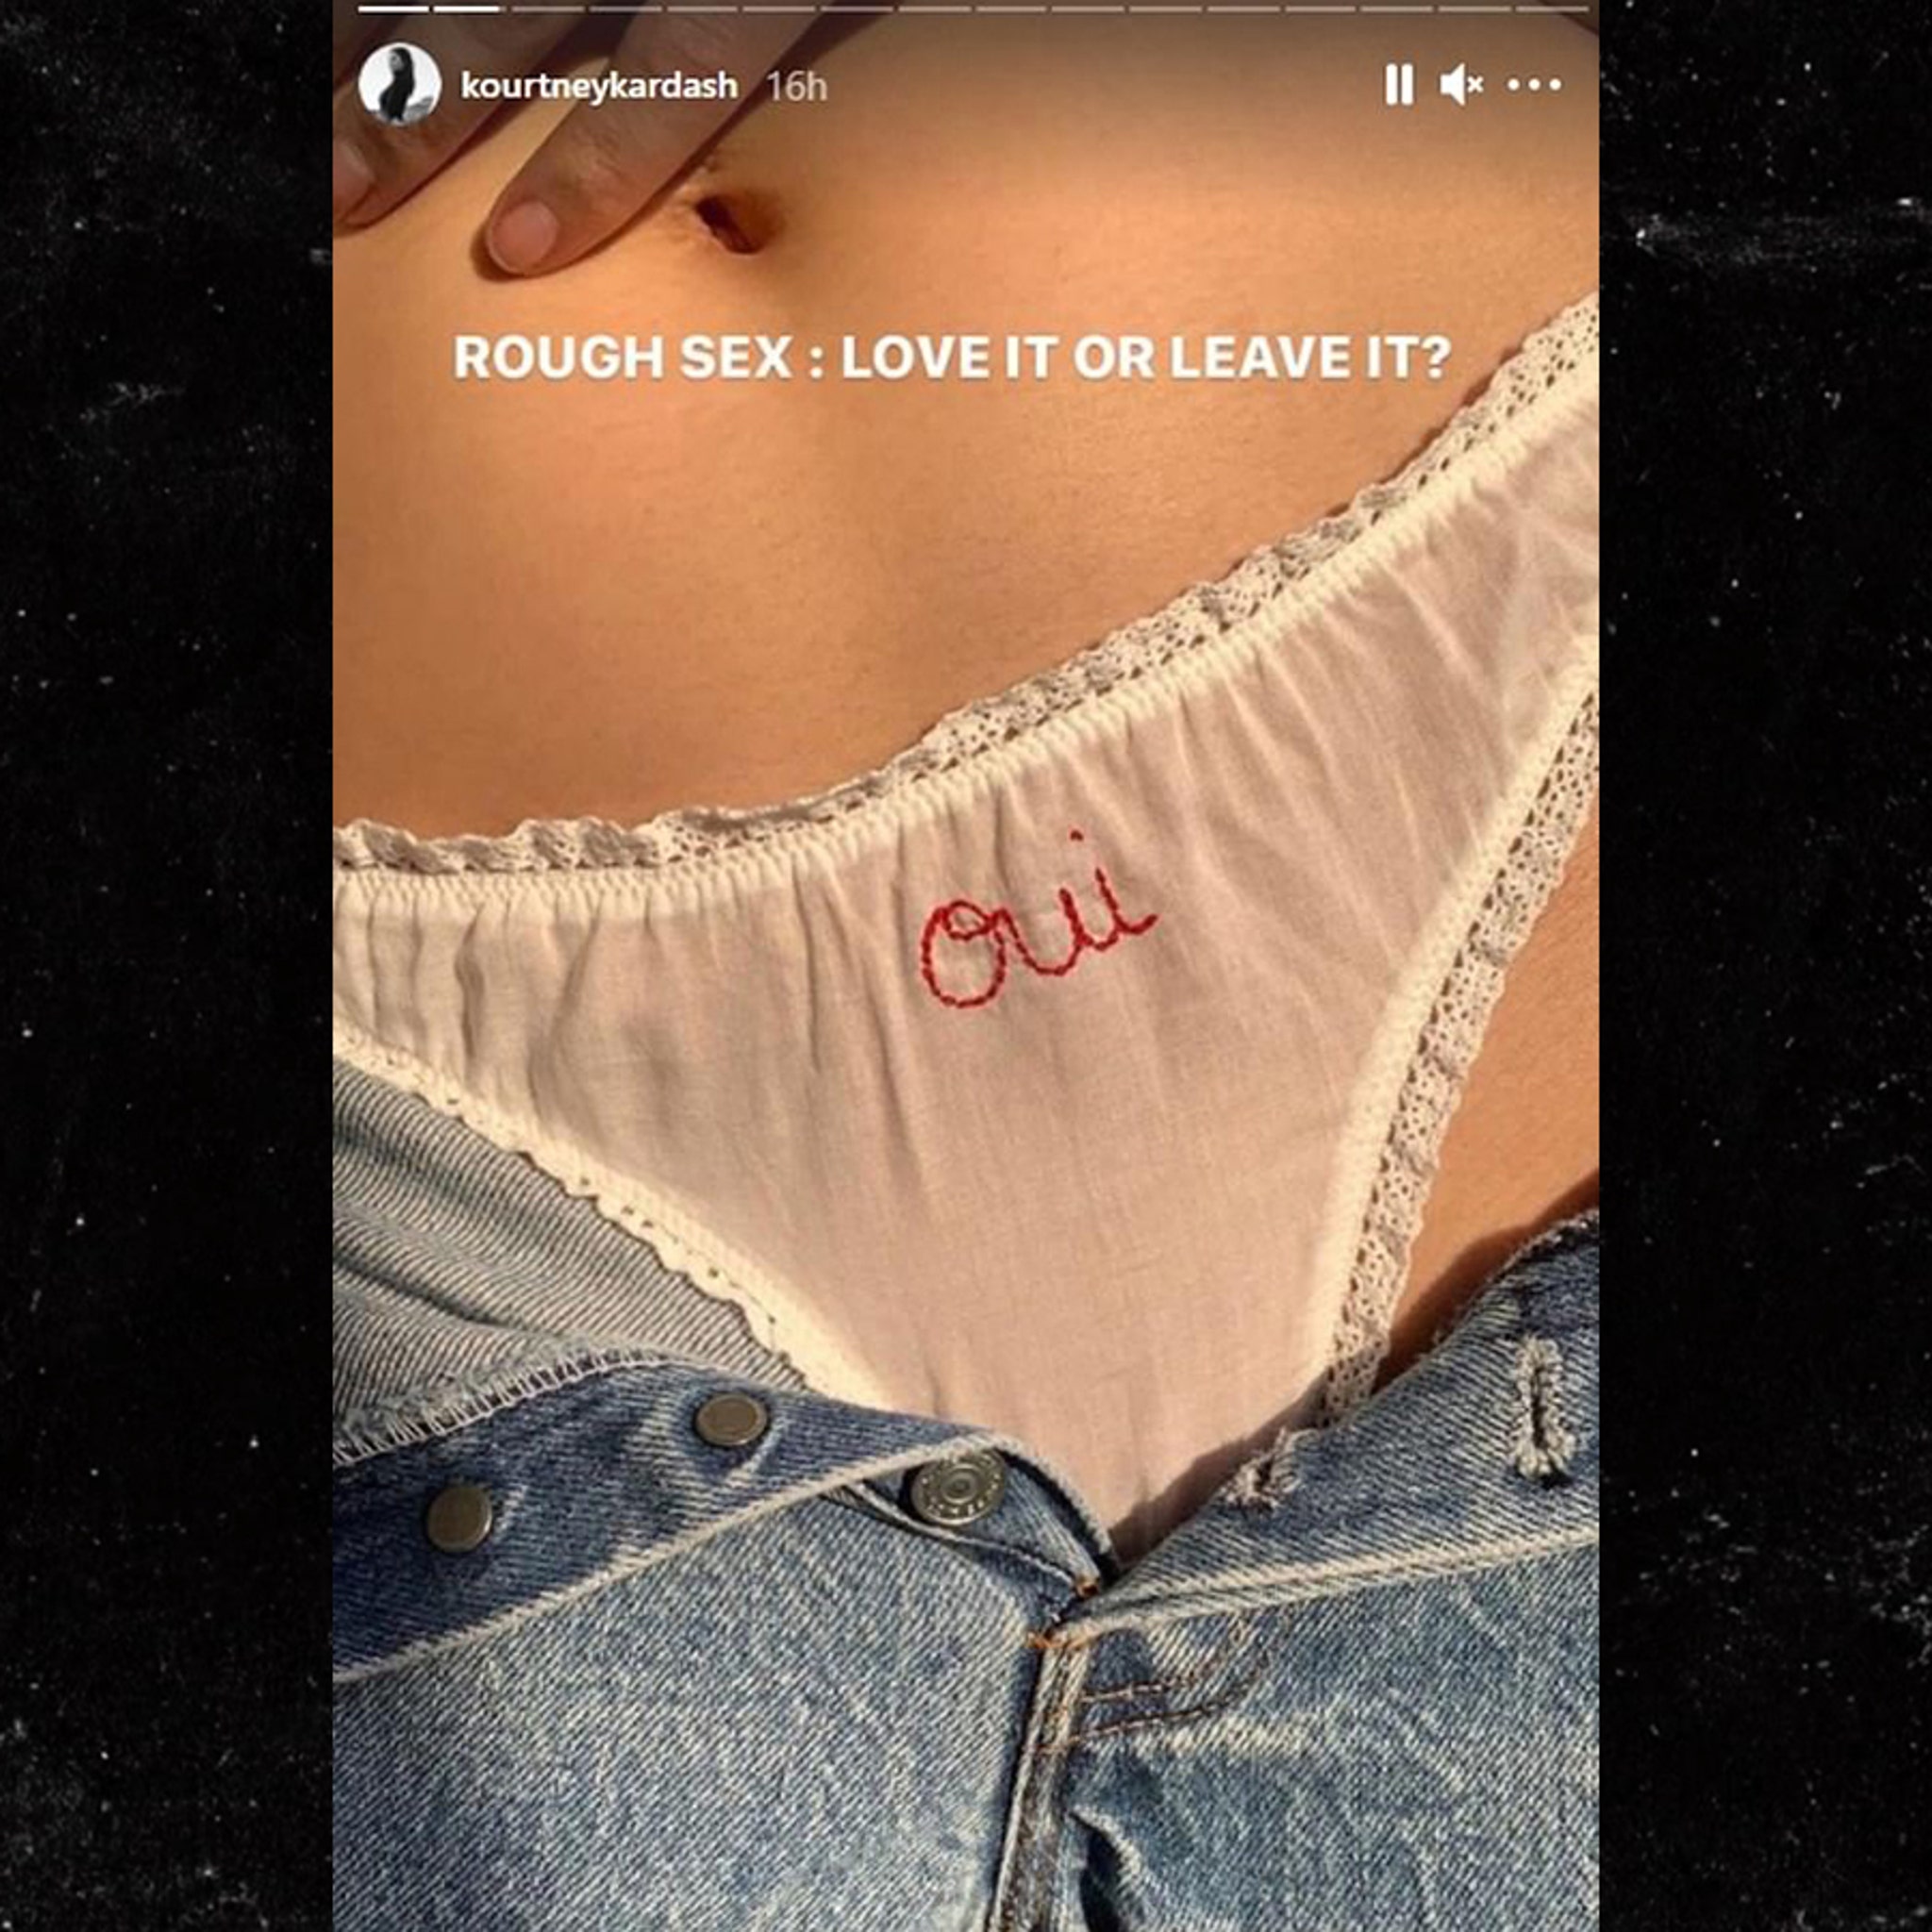 Kourtneykardash Xxx - Kourtney K Hits Followers with 'Rough Sex' Poll & 'Oui' Panties